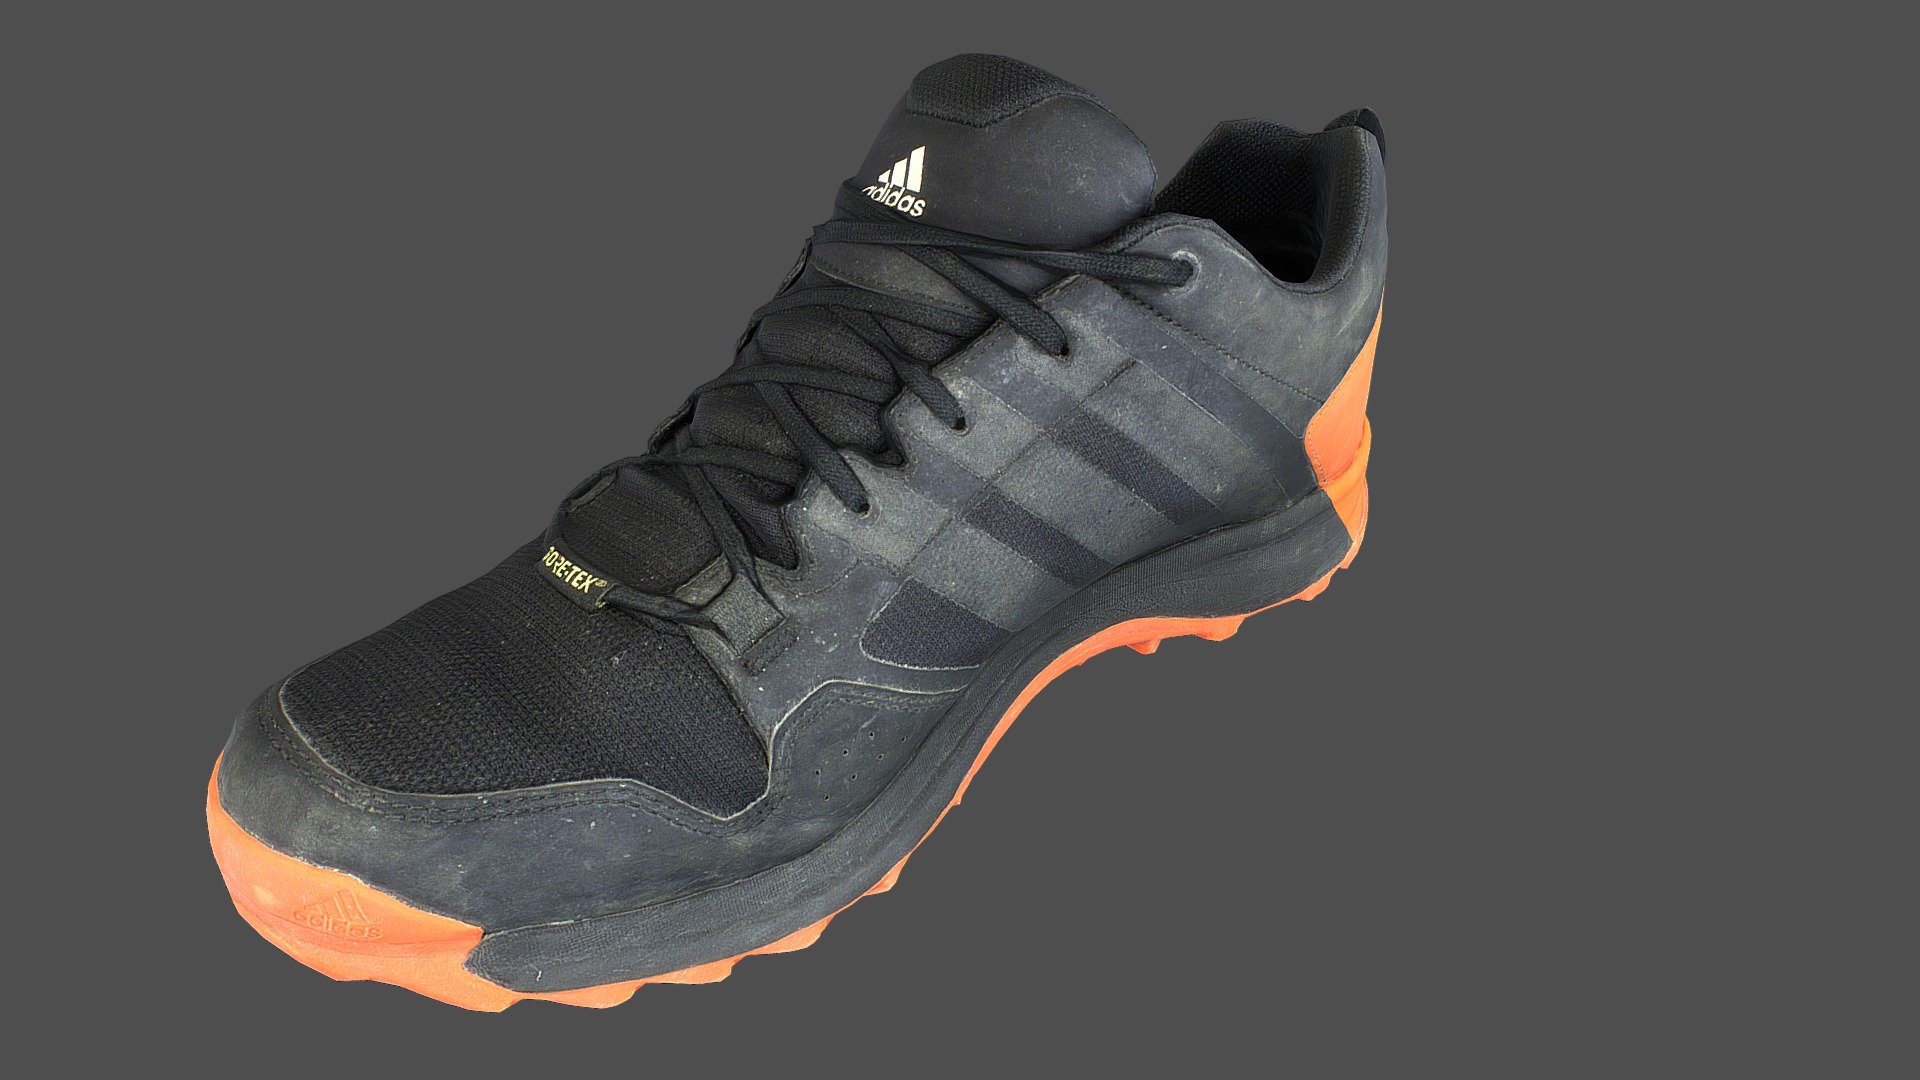 3D model Adidas sneaker shoe low poly 3D model - This is a 3D model of the Adidas sneaker shoe low poly 3D model. The 3D model is about a black tennis shoe.